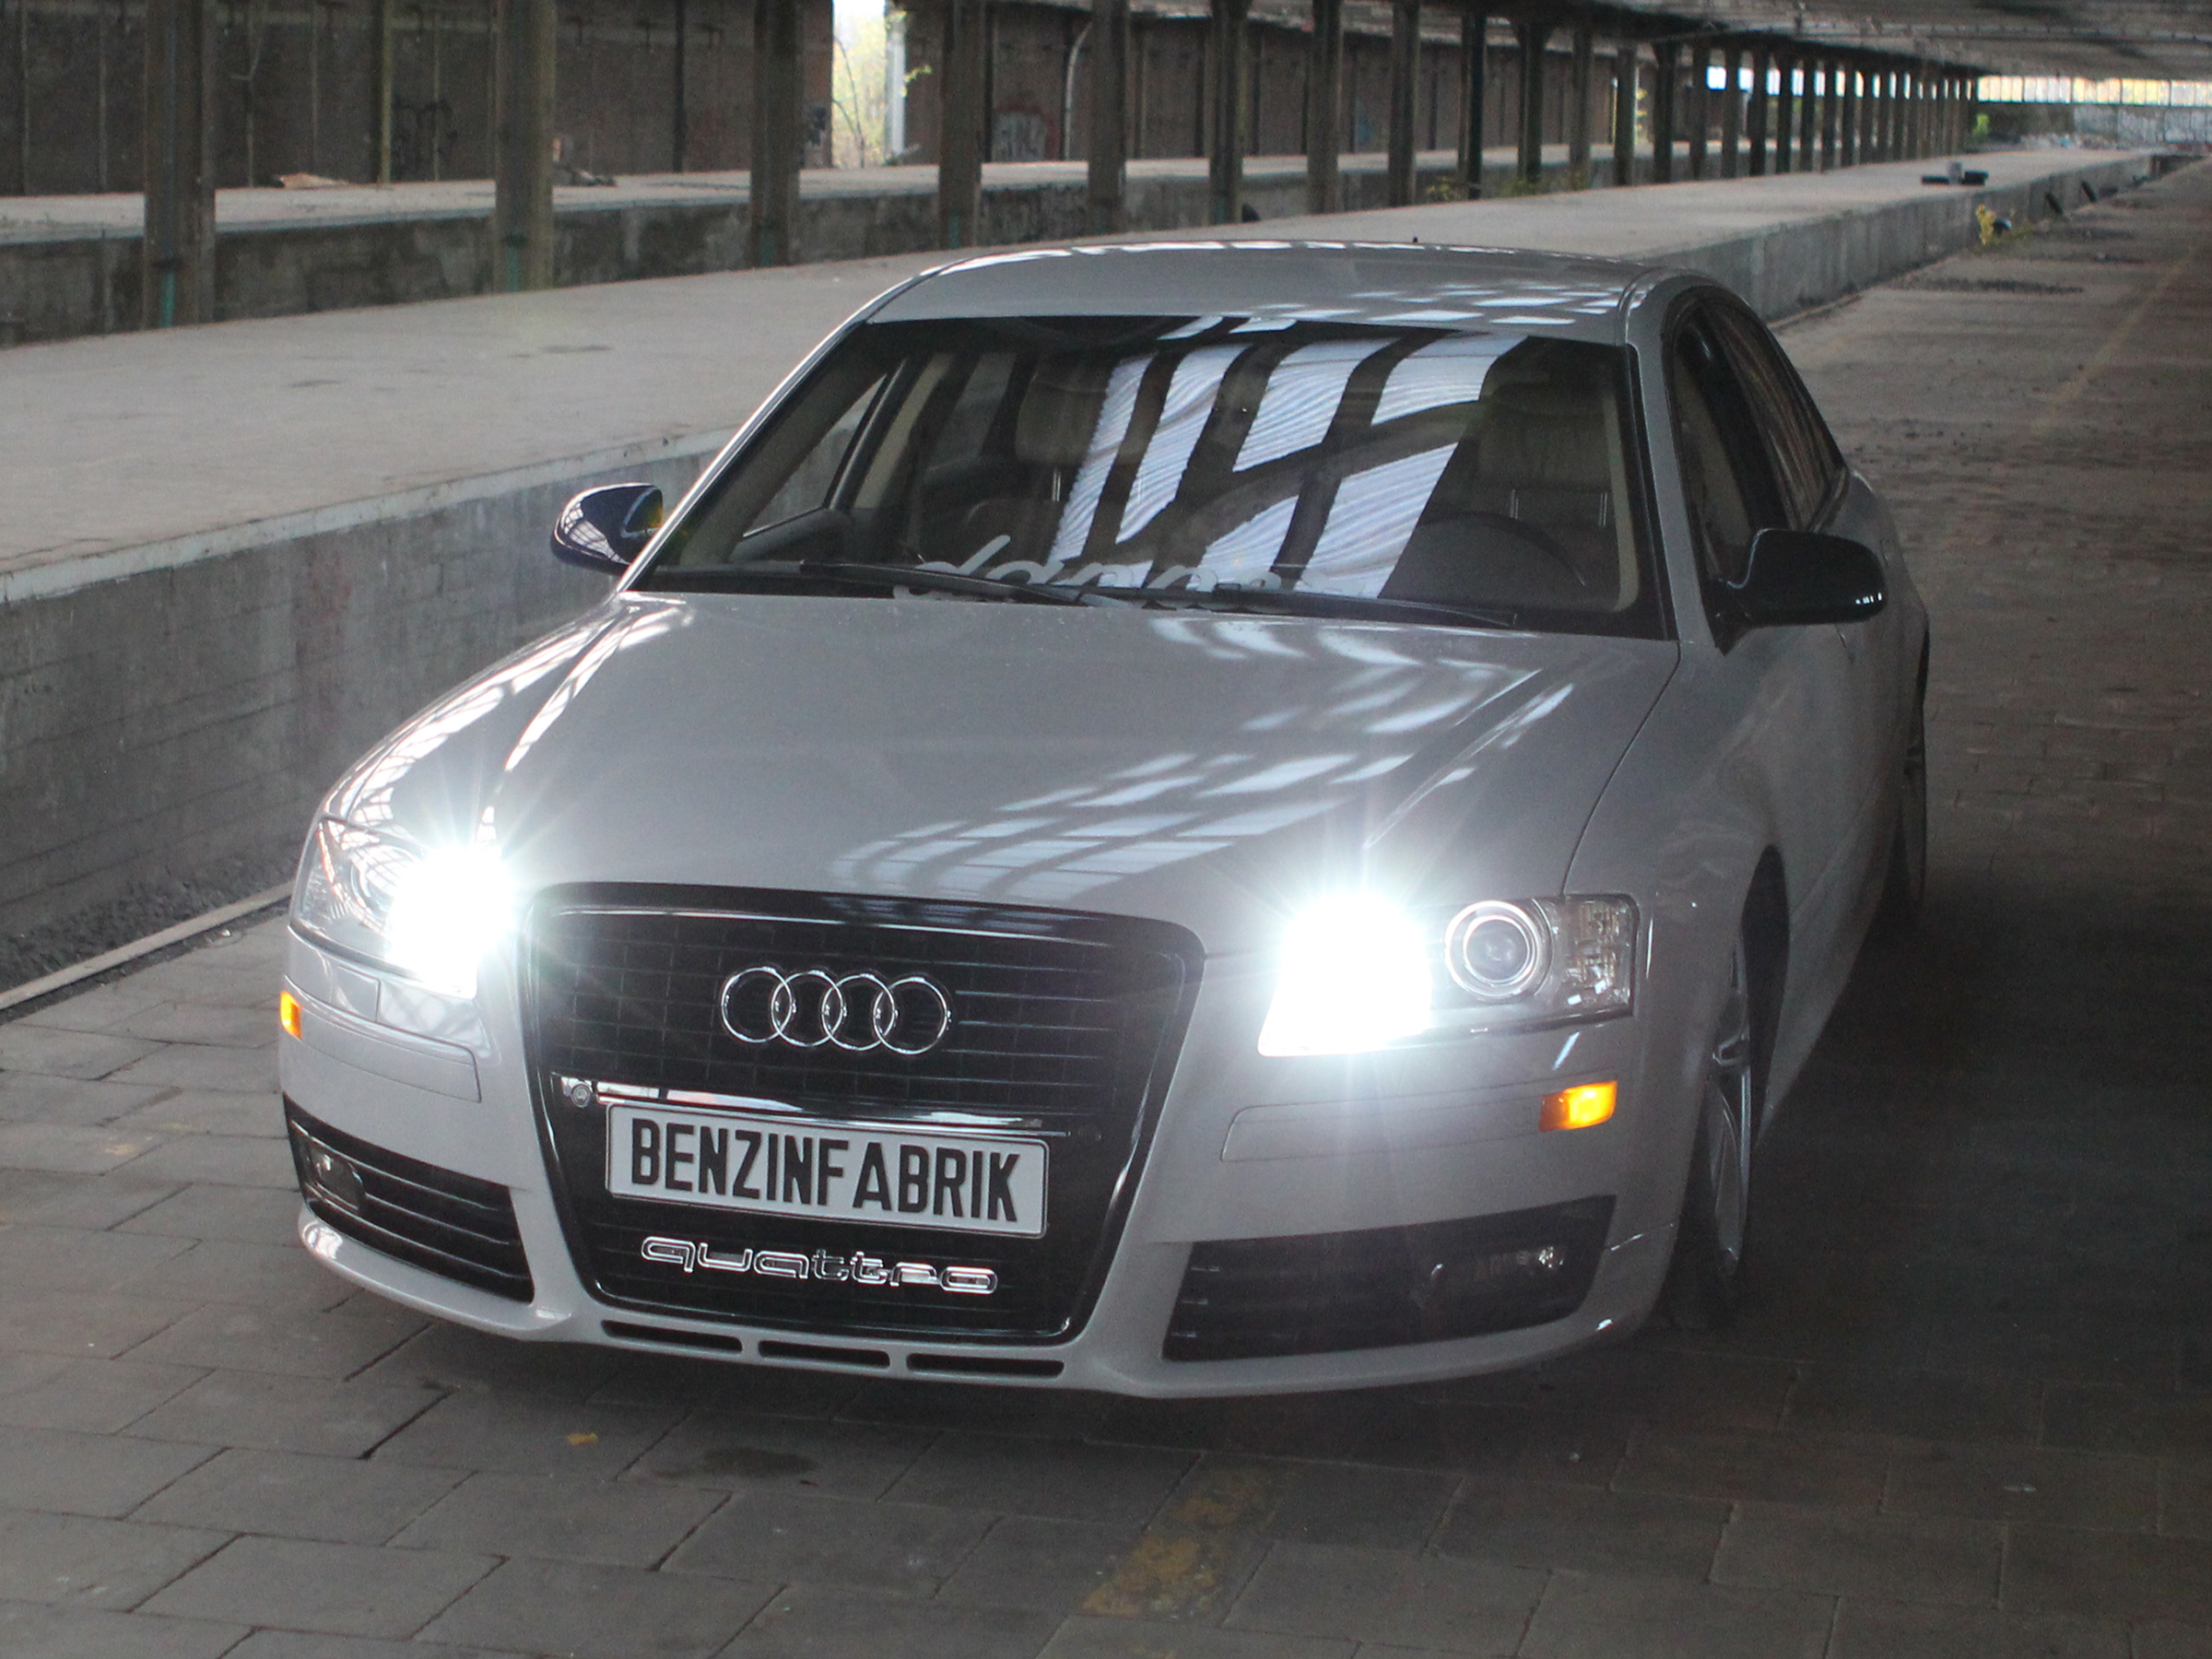 30 Watt CREE LED Tagfahrlicht, 10er SMD LED Standlicht für Audi A8